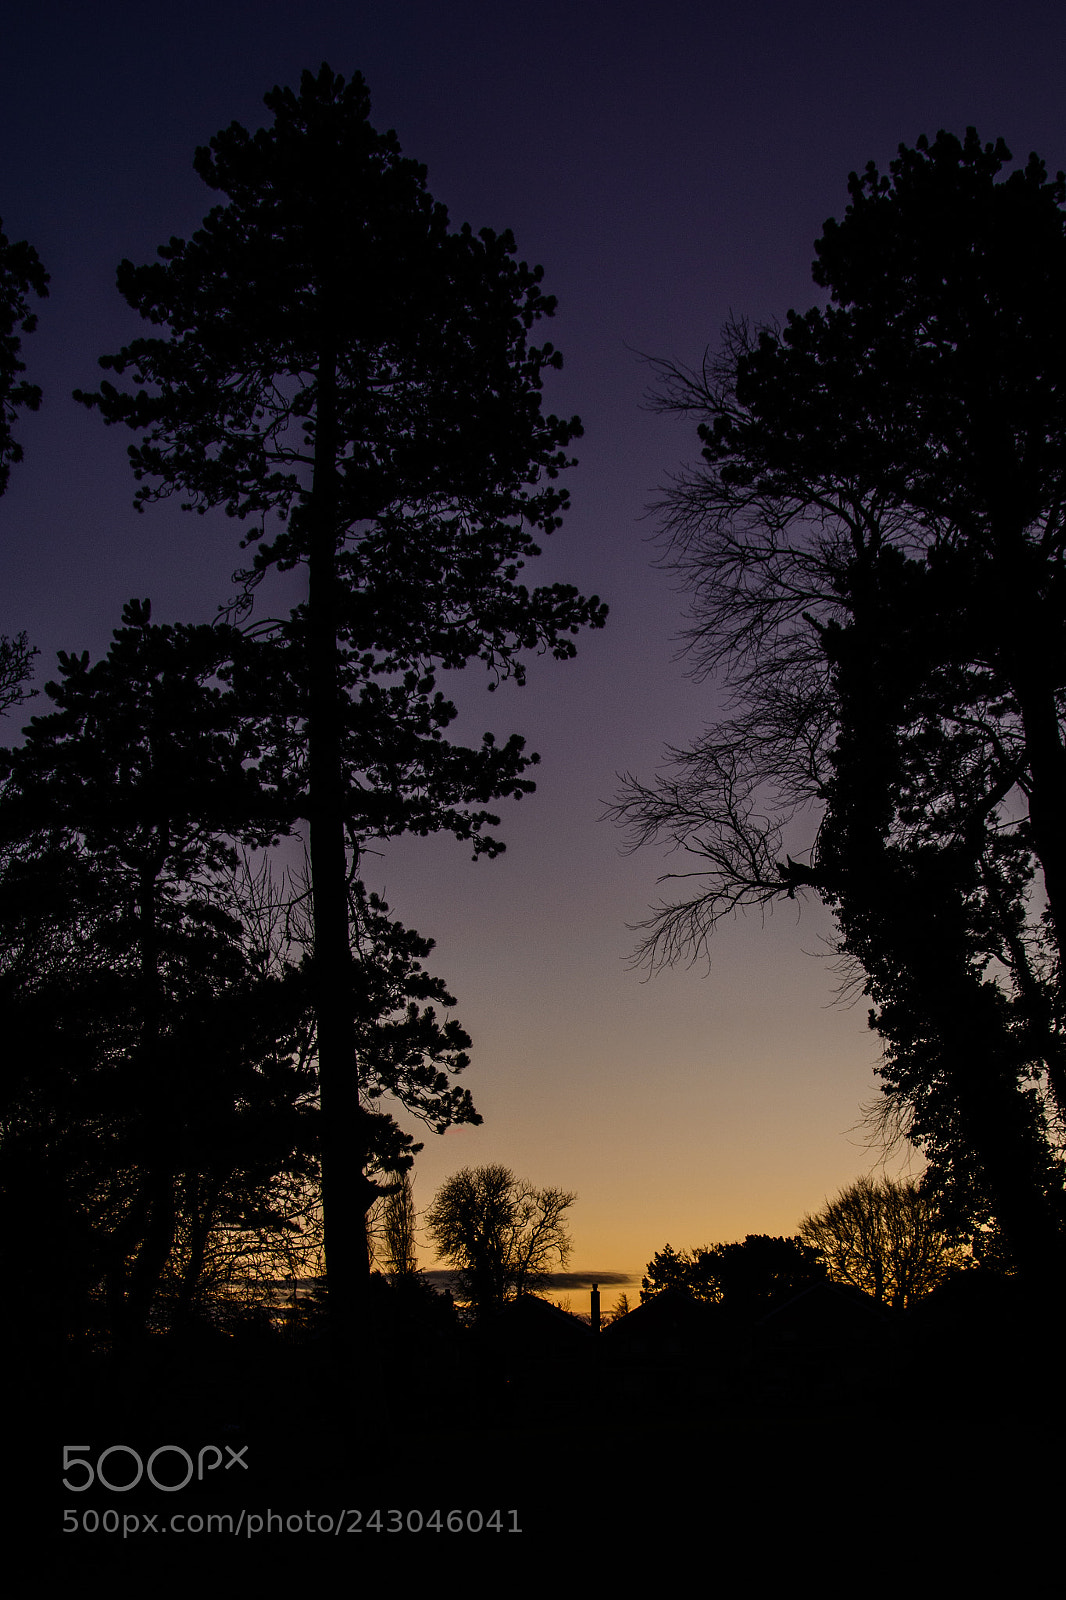 Nikon D5200 sample photo. Dawn in dublin photography